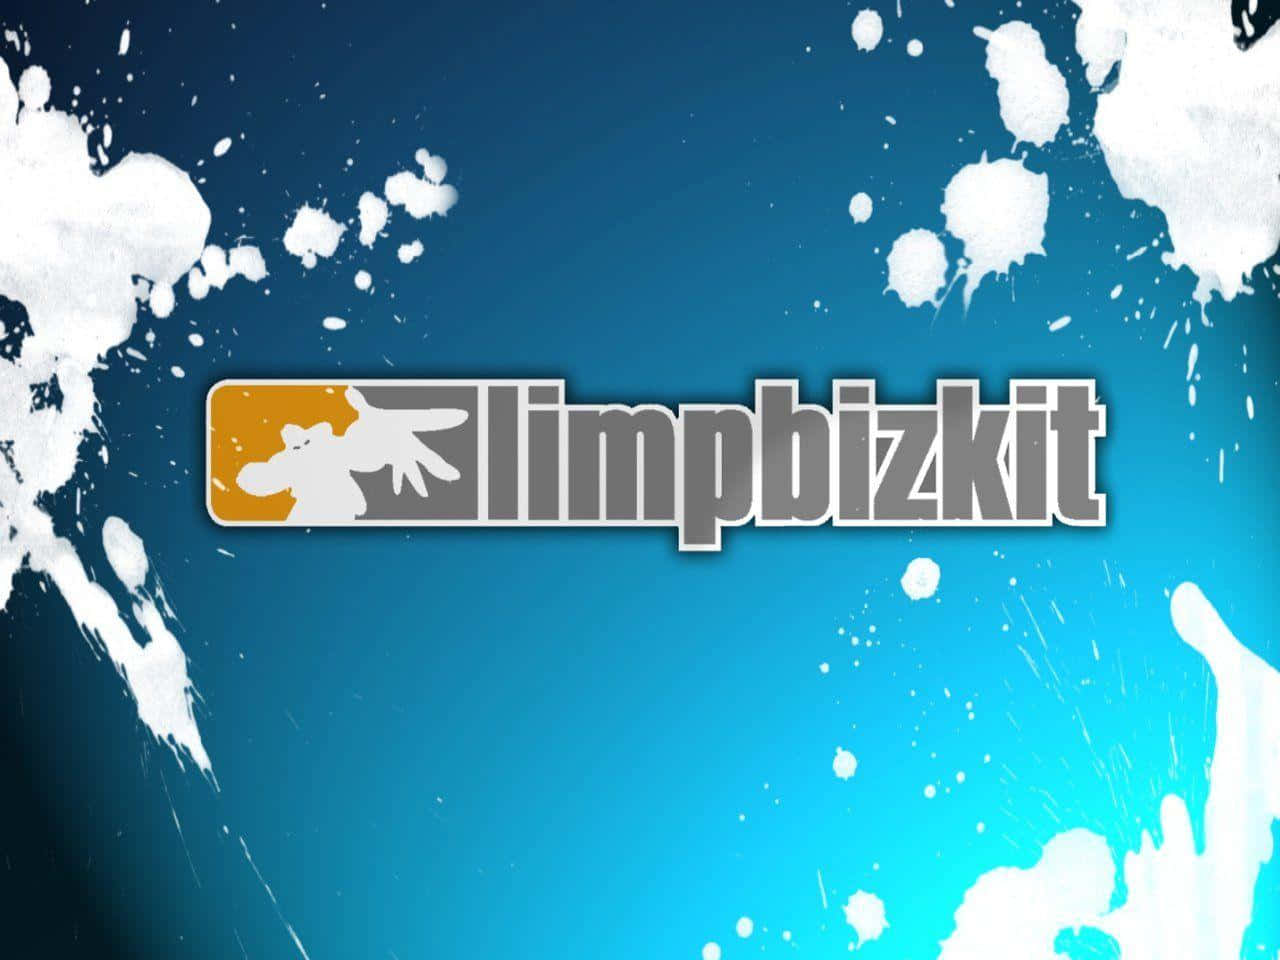 Limp Bizkit Logo Splash Background Wallpaper